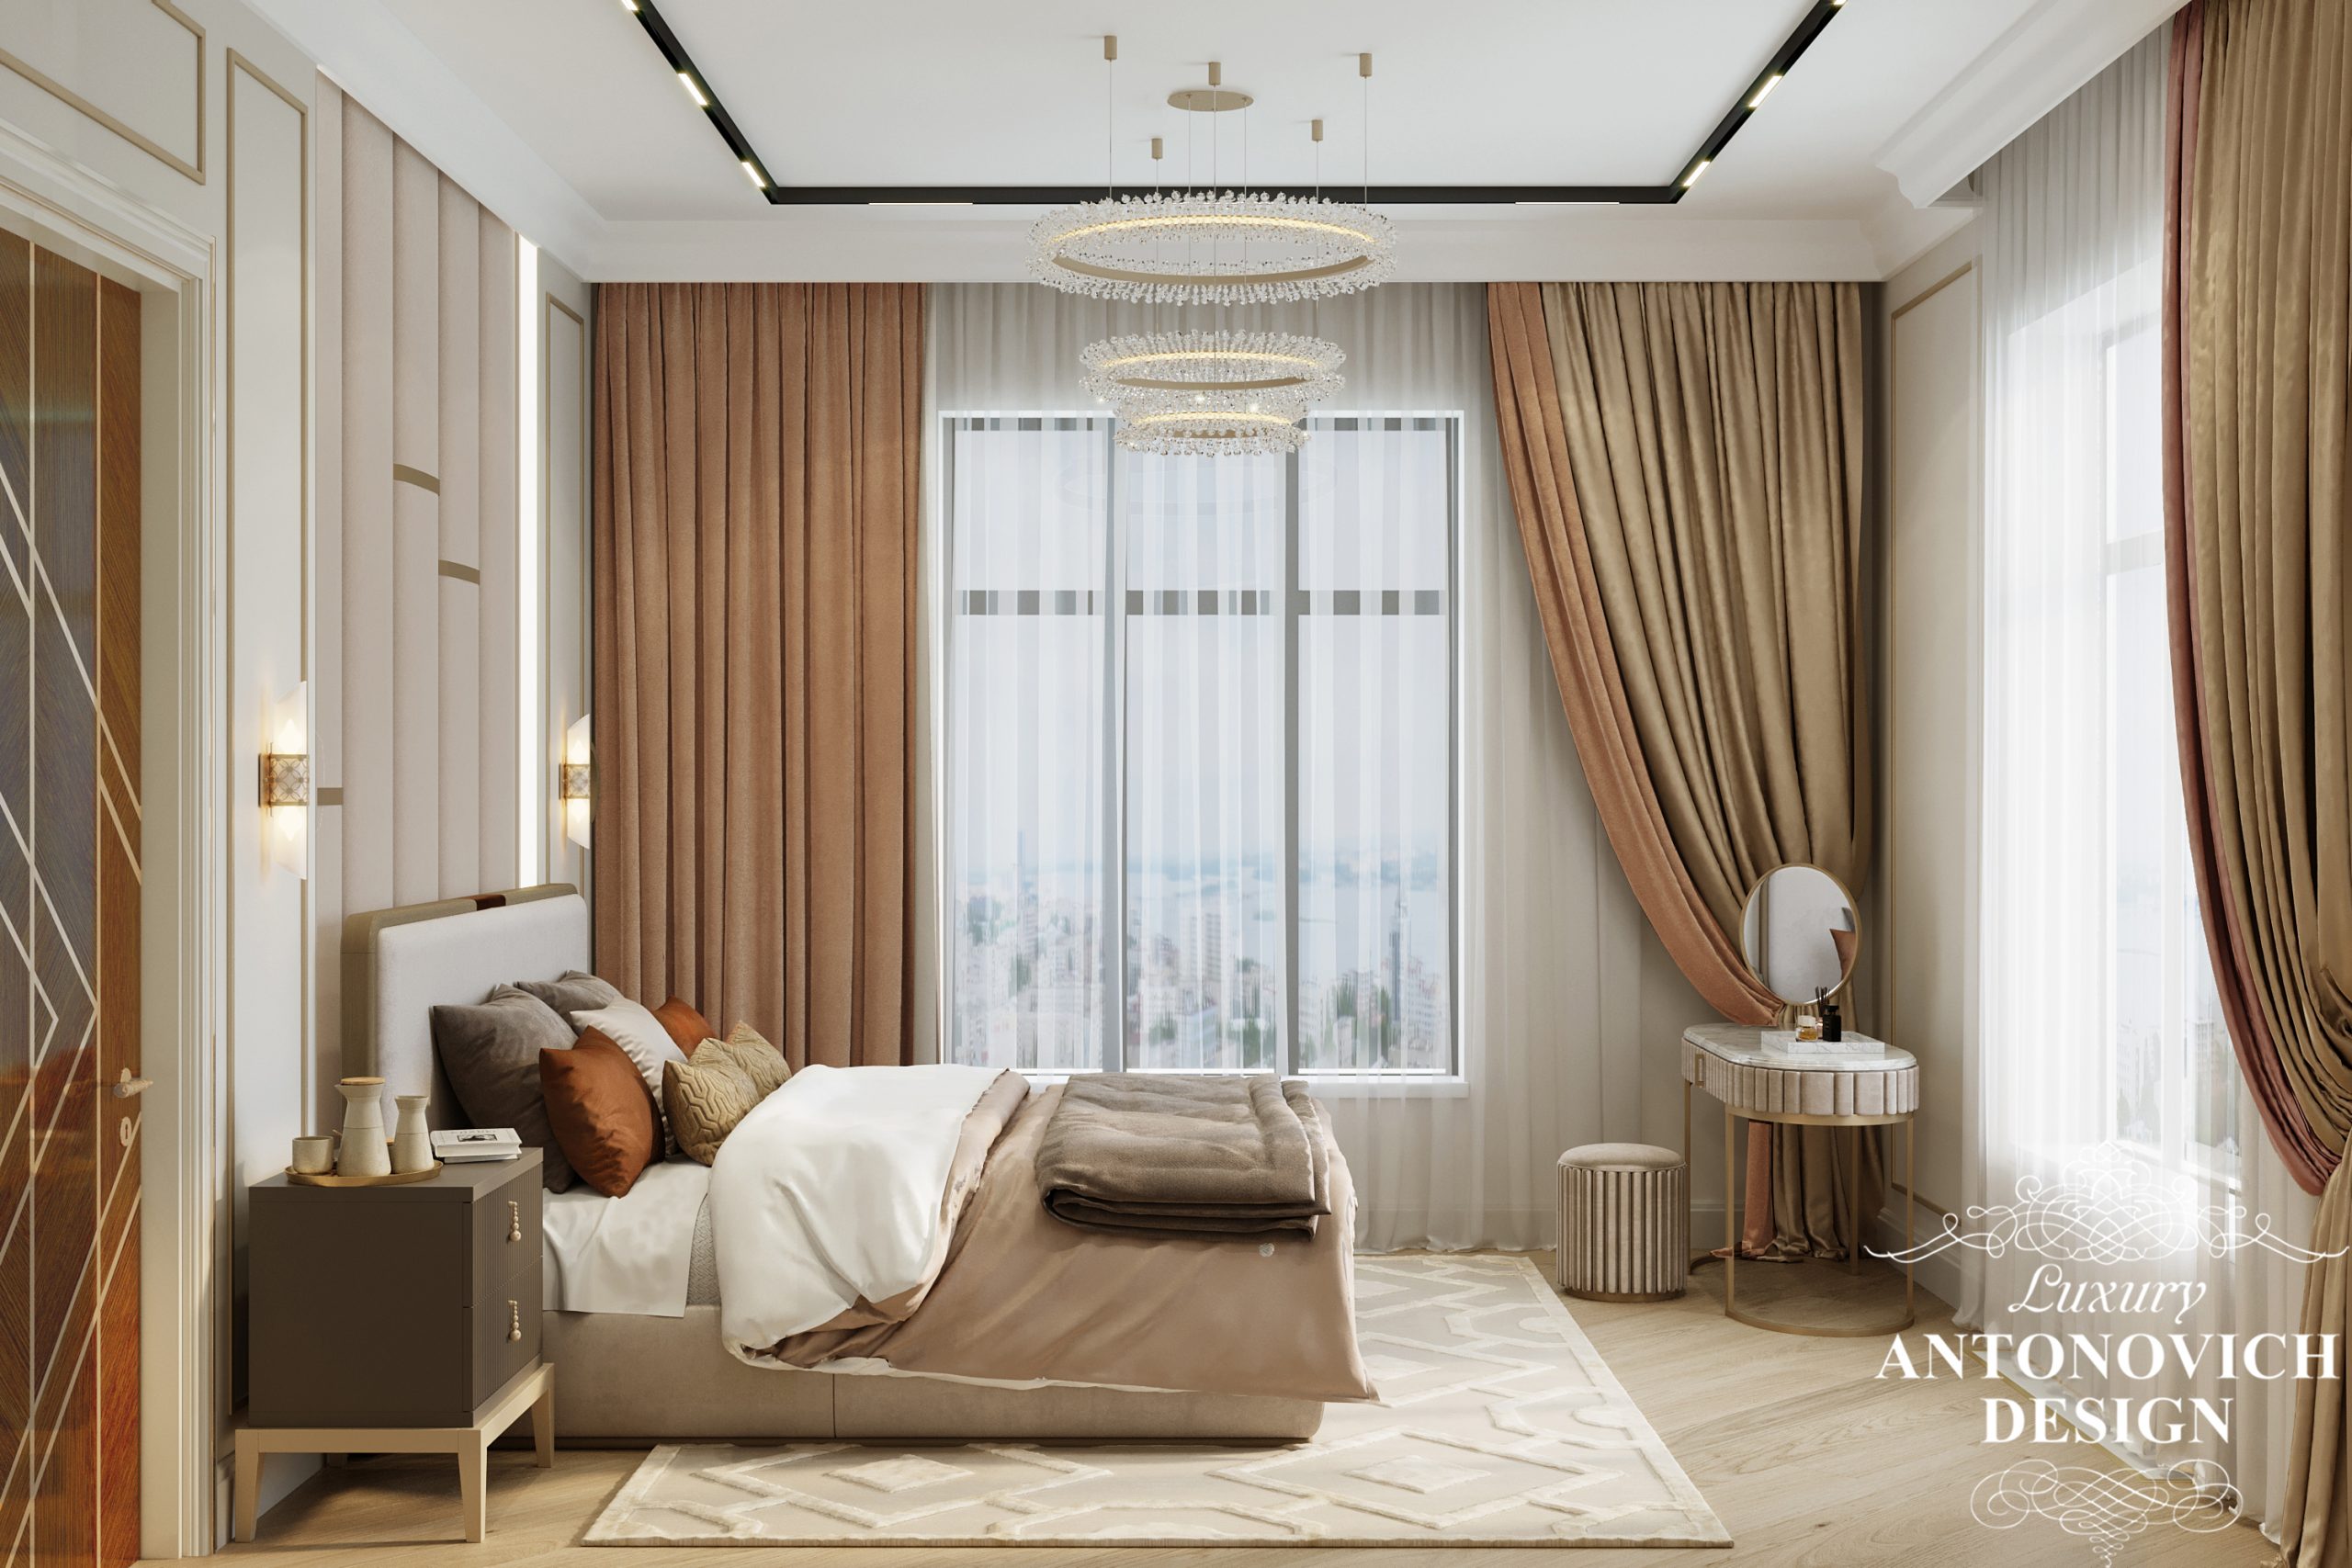 Акцентные терракотовые теплые оттенки и элитные светильники из латунь и мрамора в интерьере гостевой спальни